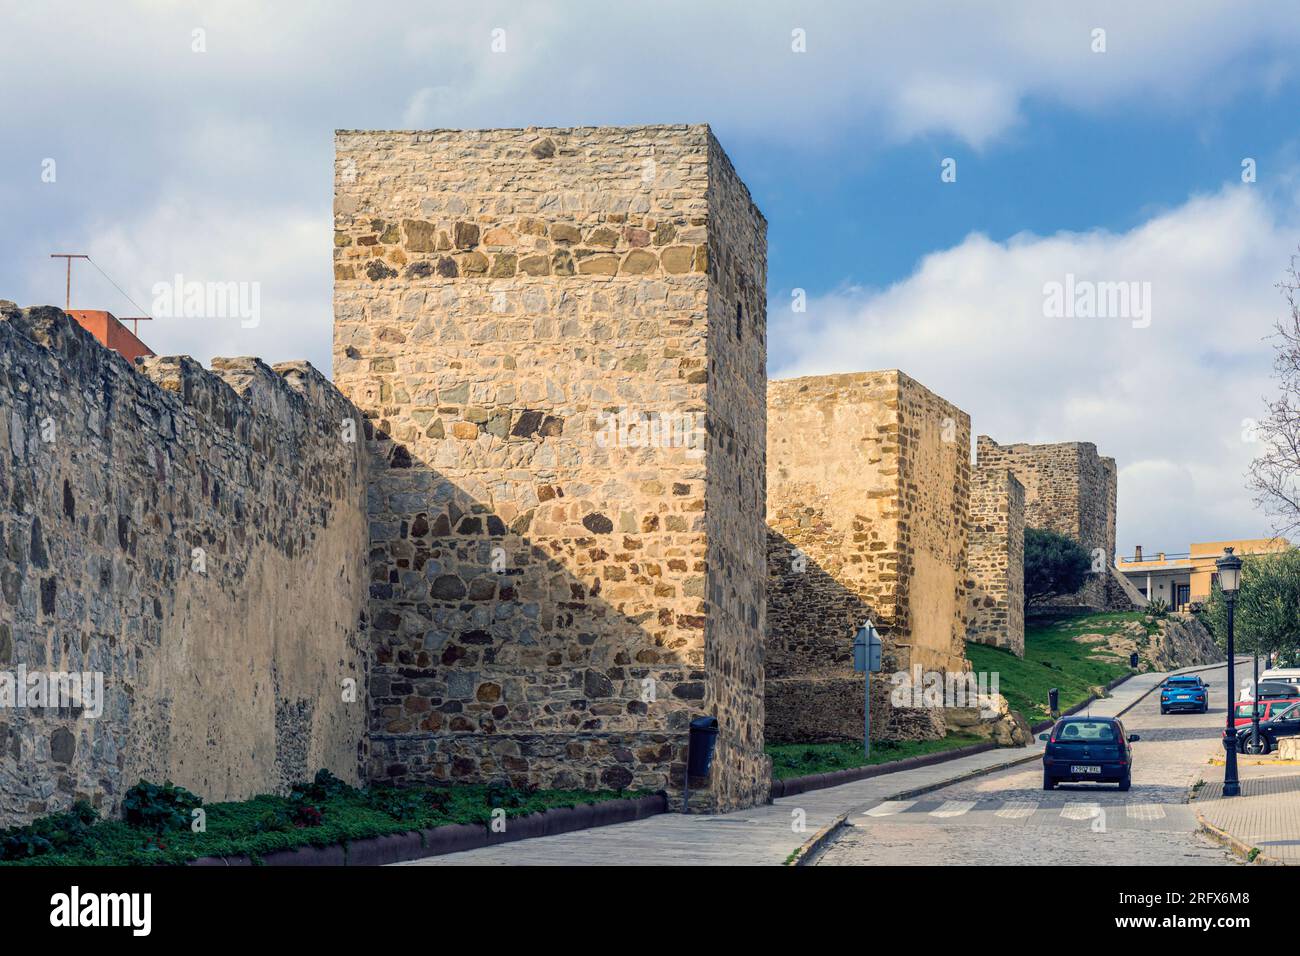 Tarifa, Costa de la Luz, Provinz Cadiz, Spanien. Mittelalterliche Stadtmauern und Türme. Stockfoto